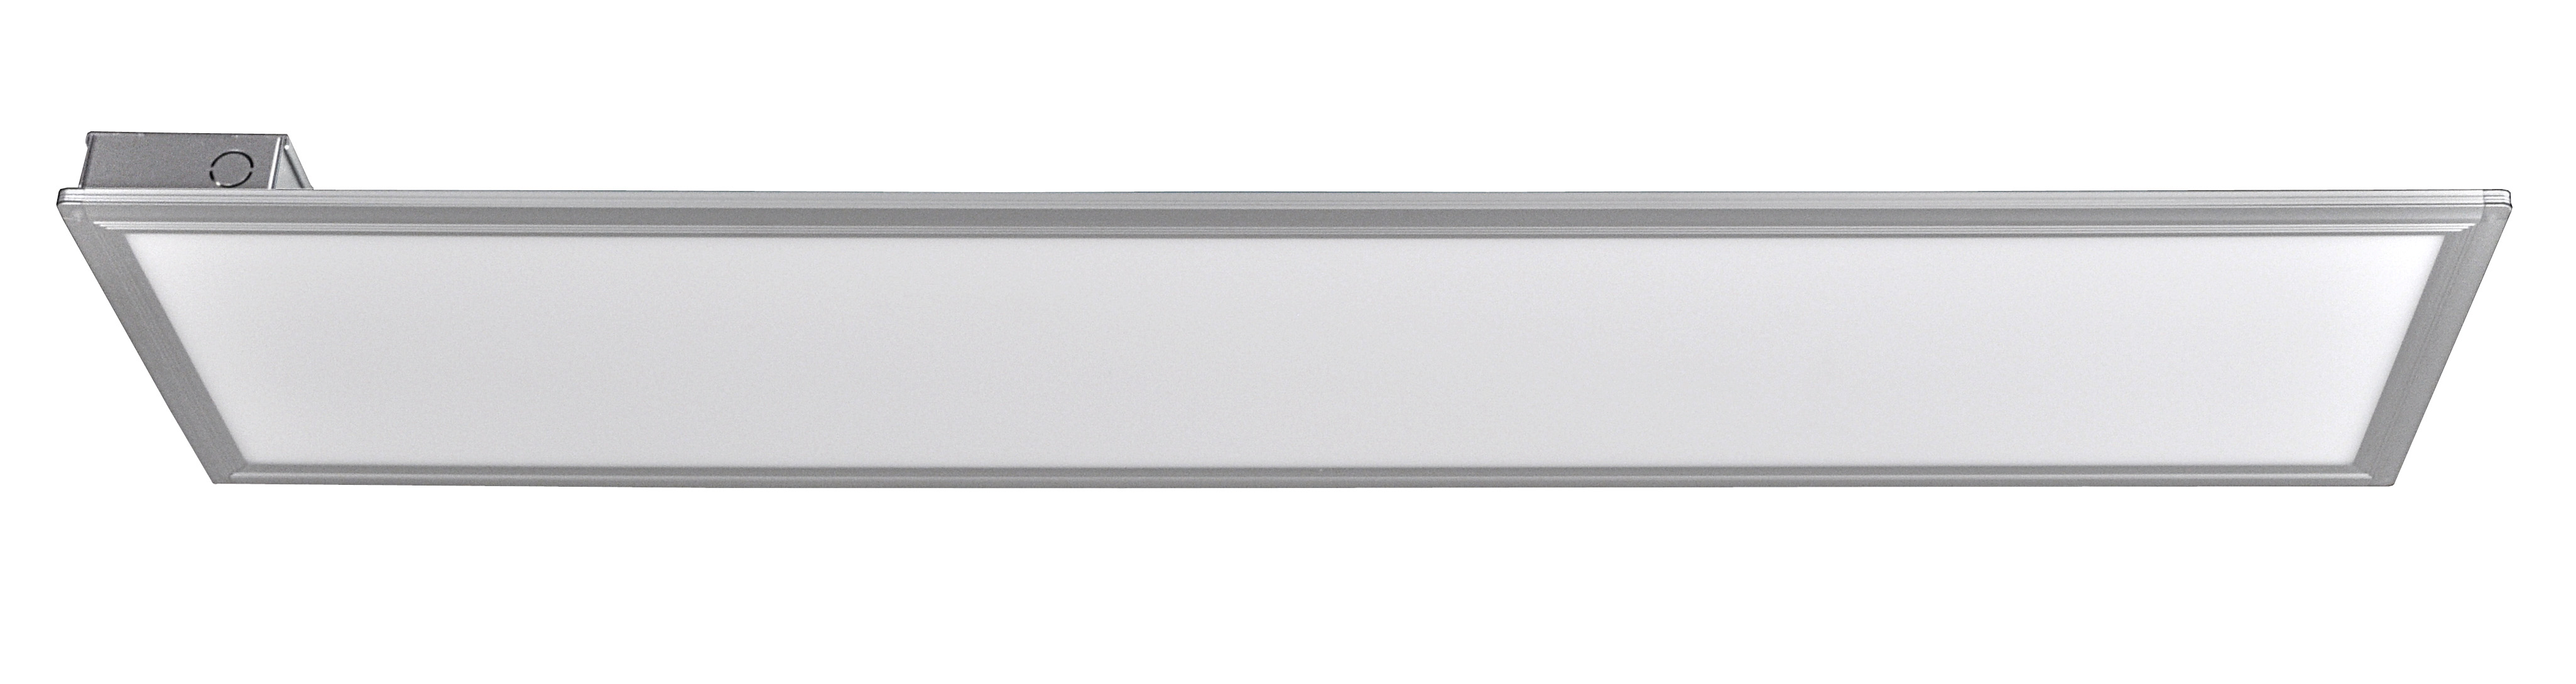 Panel delgado colgante de LED 45 W 30 x 120 cm luz neutra, Luminarios  Colgantes y Gabinetes, 49725